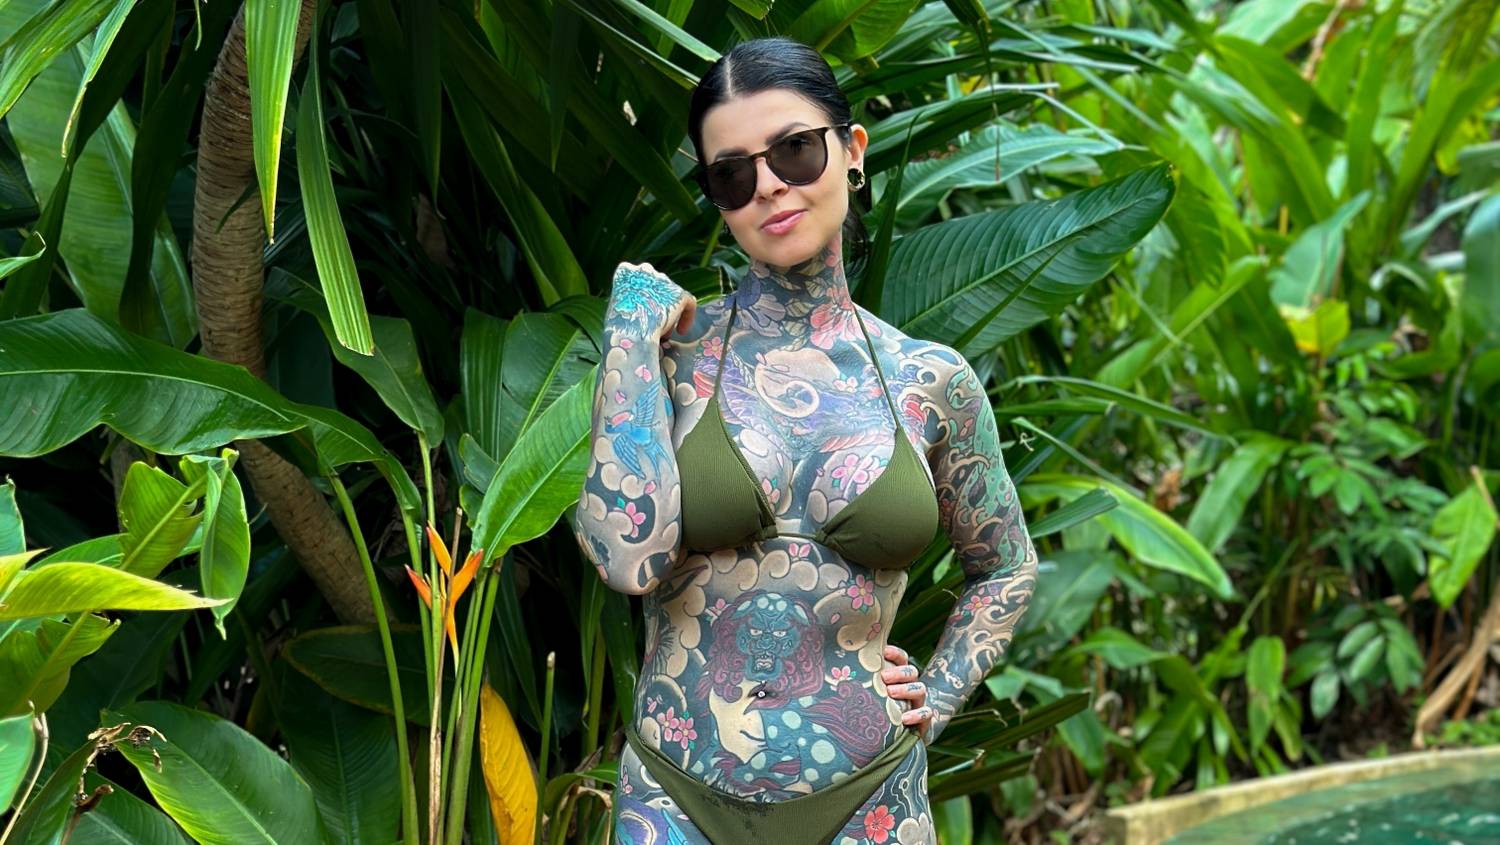 Egy fiatal nő 14 millió forintért borította be a testét tetoválással, hogy legyőzze önbizalomhiányát